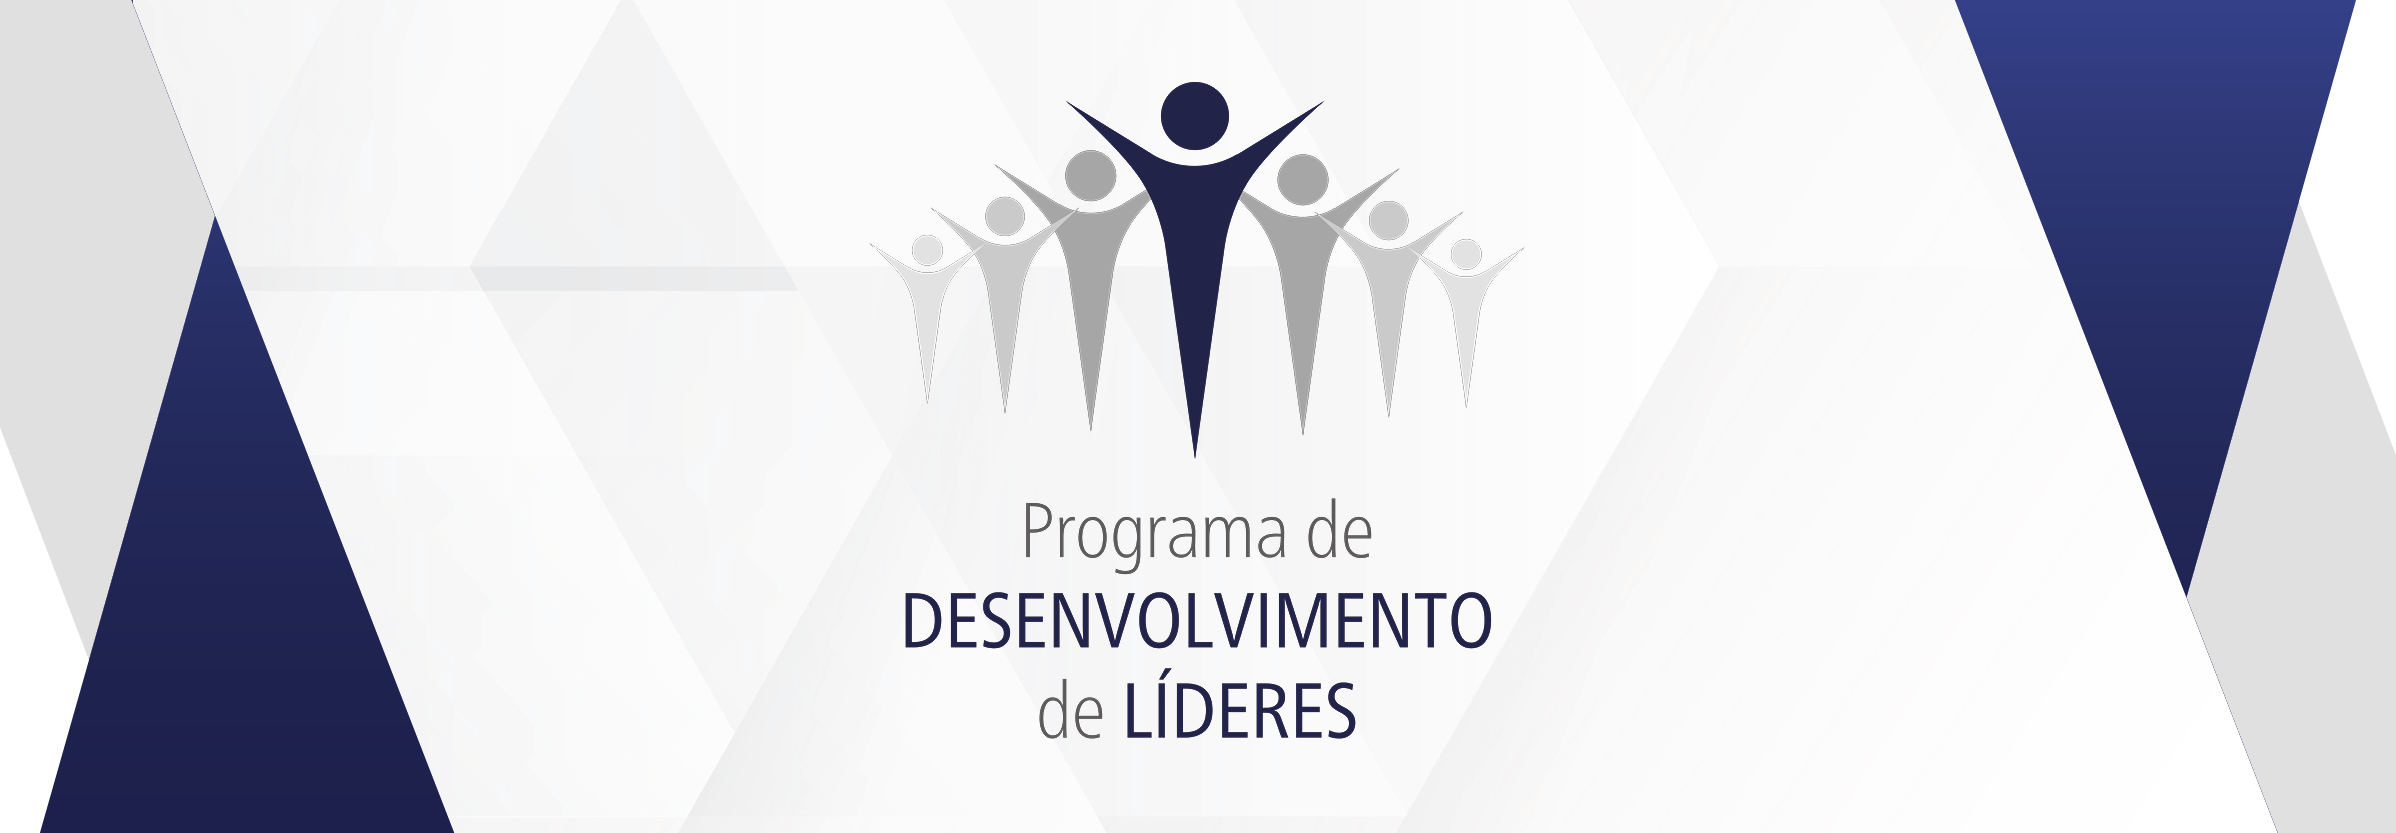 Programa de Desenvolvimento de Líderes é nova iniciativa da NPE